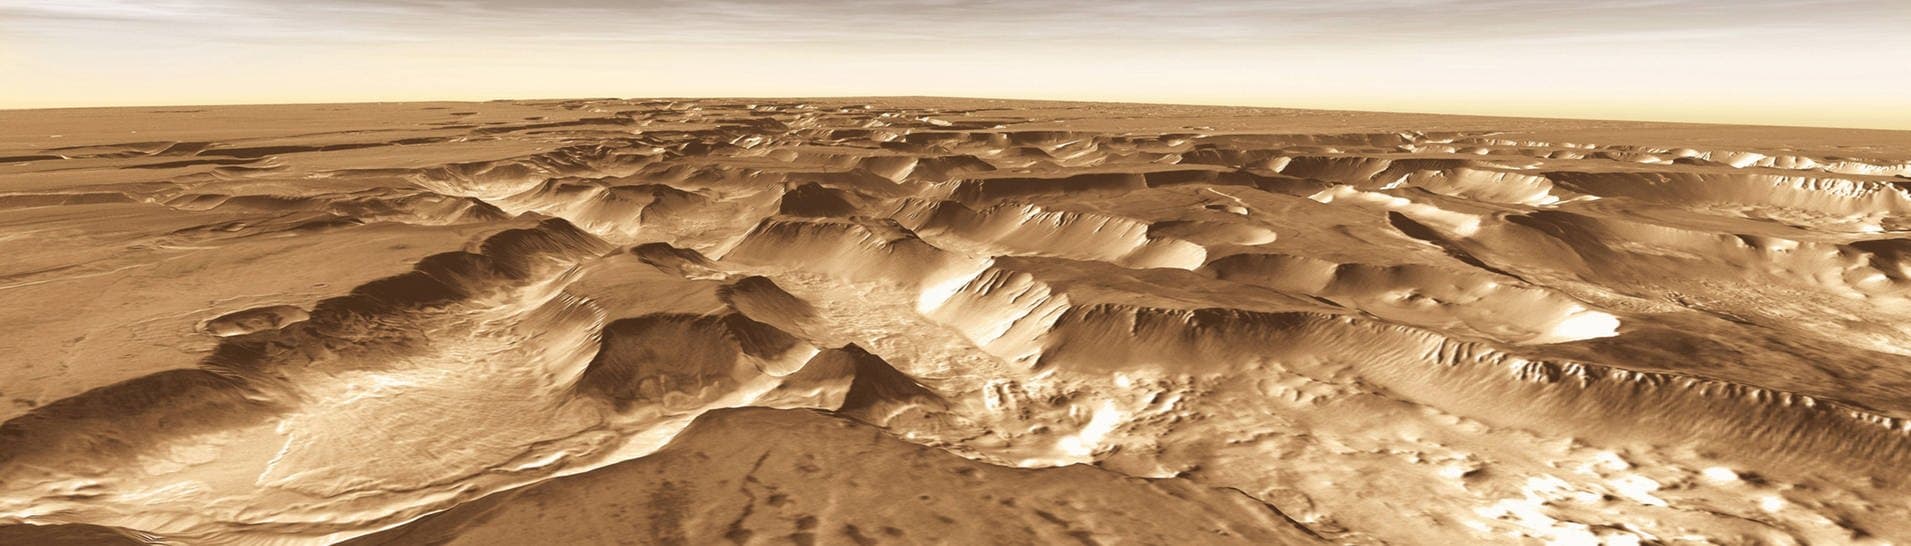 Das Grabenbruchsystem „Noctis Labyrinthus“ auf dem Mars.